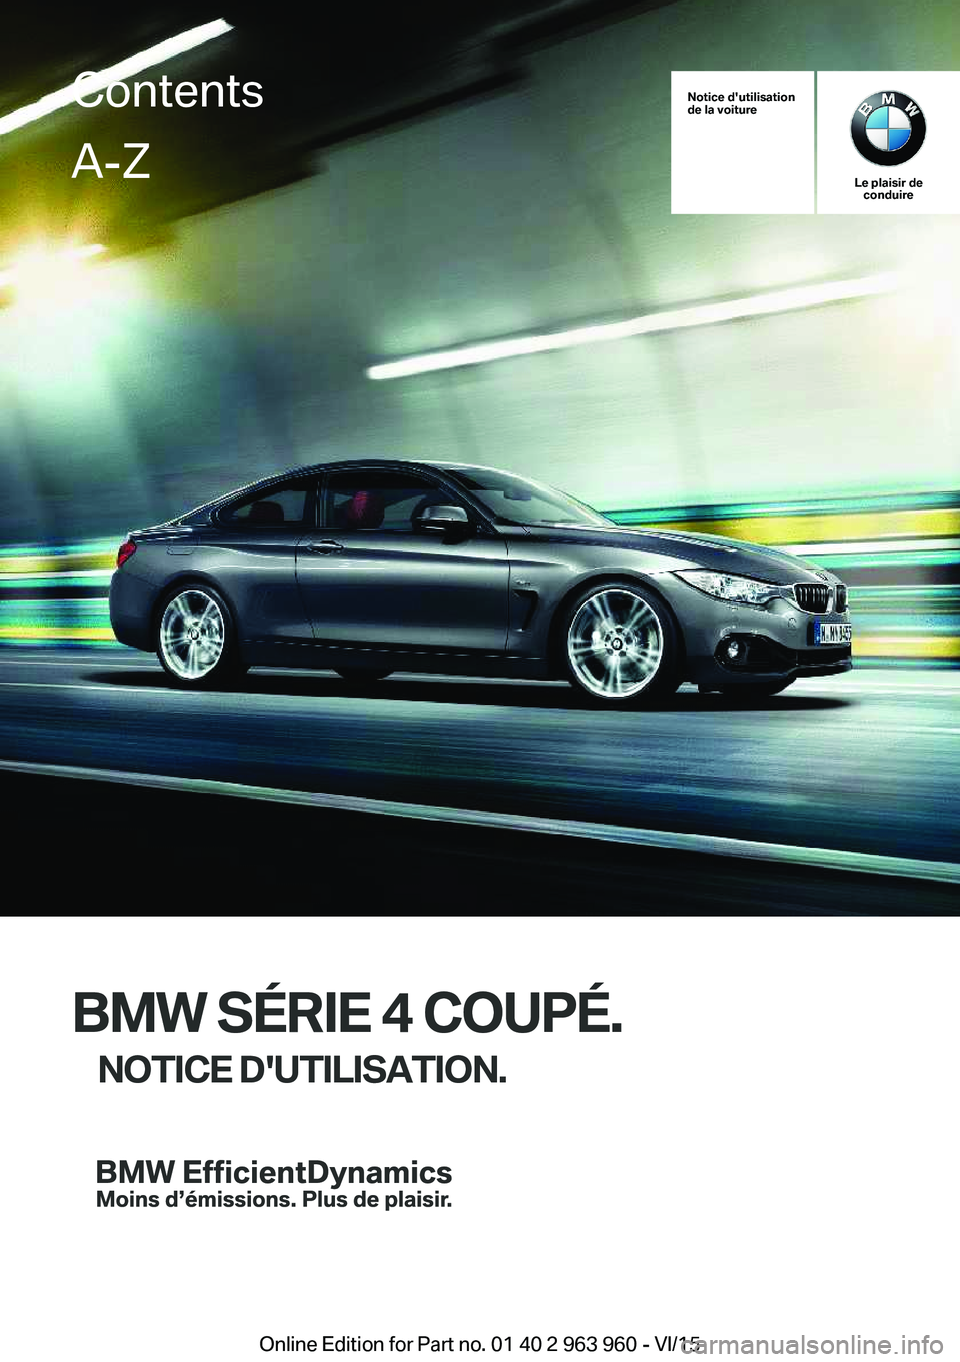 BMW 4 SERIES COUPE 2016  Notices Demploi (in French) Notice d'utilisation
de la voiture
Le plaisir de conduire
BMW SÉRIE 4 COUPÉ.
NOTICE D'UTILISATION.
ContentsA-Z
Online Edition for Part no. 01 40 2 963 960 - VI/15   